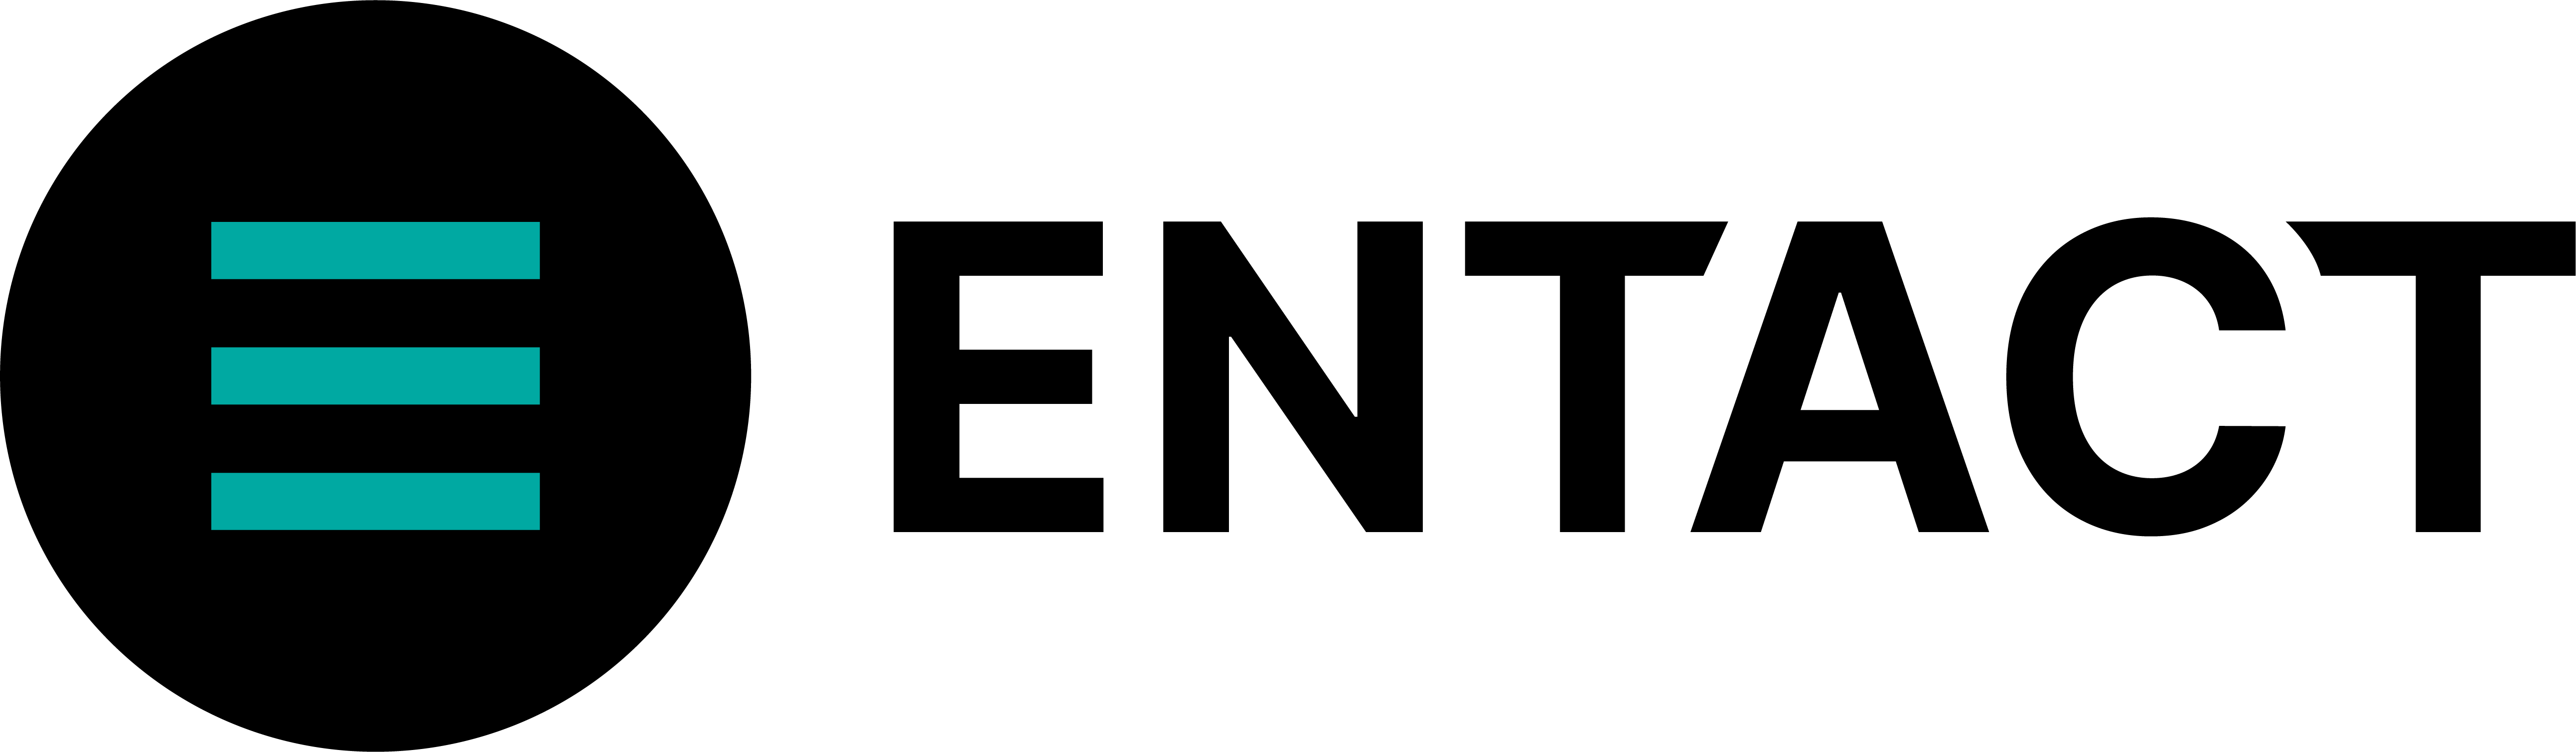 ENTACT Logo - Horizontal.png